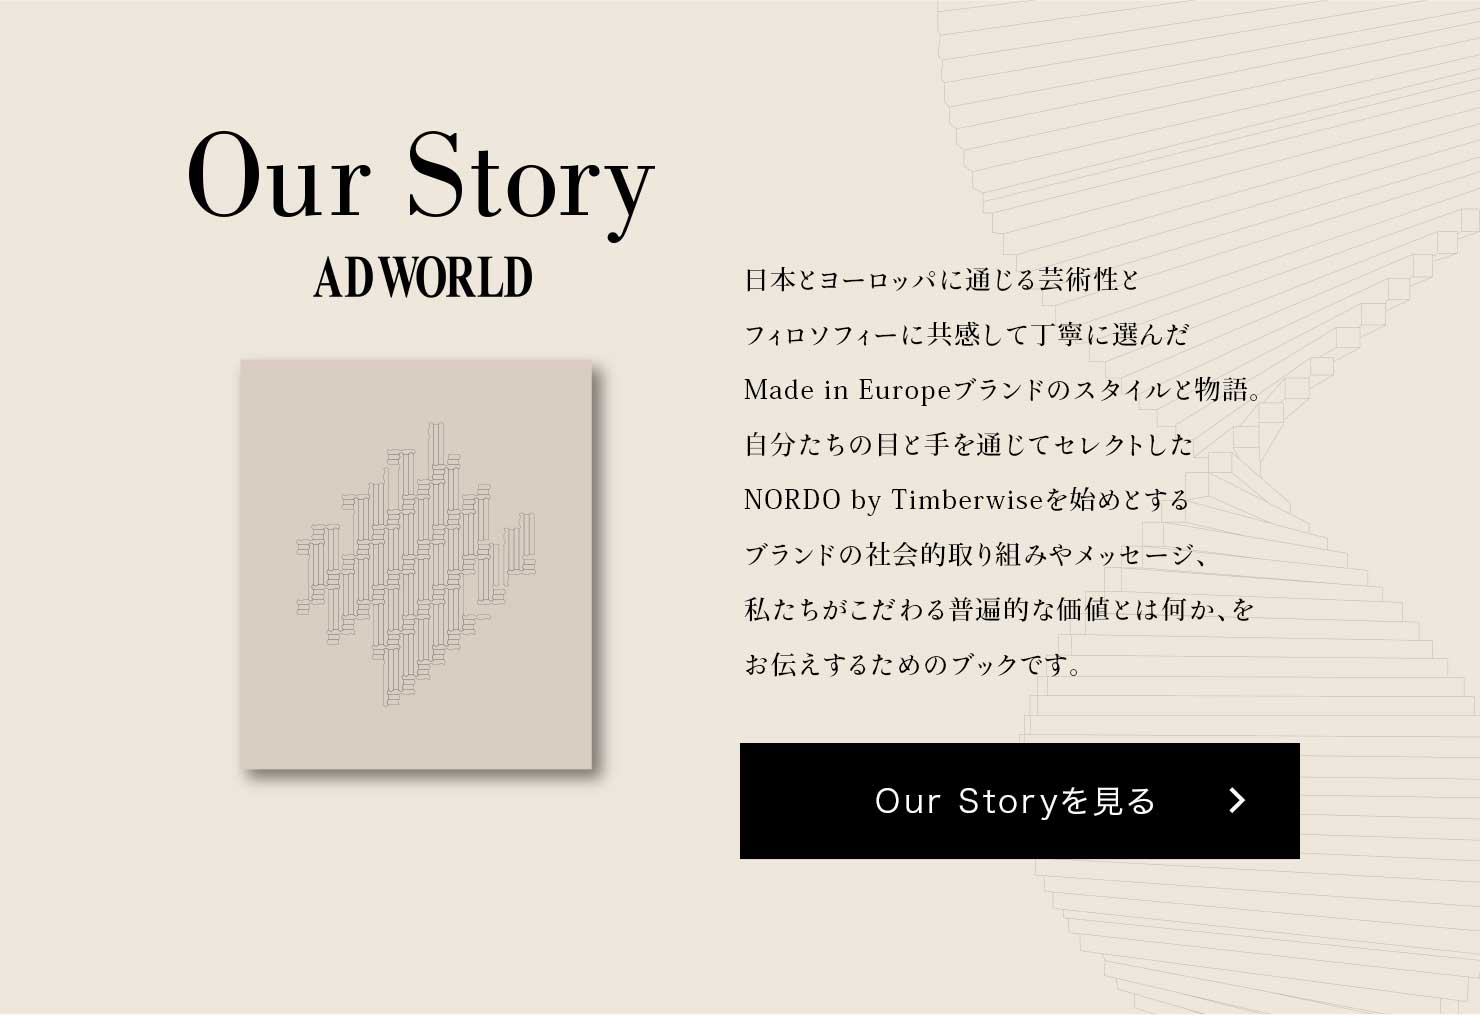 Our Story ADWORLD {ƃ[bpɒʂ|pƃtB\tB[ɋĒJɑIMade in Europeuh̃X^CƕB̖ڂƎʂăZNgNORDO by Timberwisen߂Ƃuh̎ЉIg݂⃁bZ[WA镁ՓIȉlƂ͉A`邽߂̃ubNłB Our Story